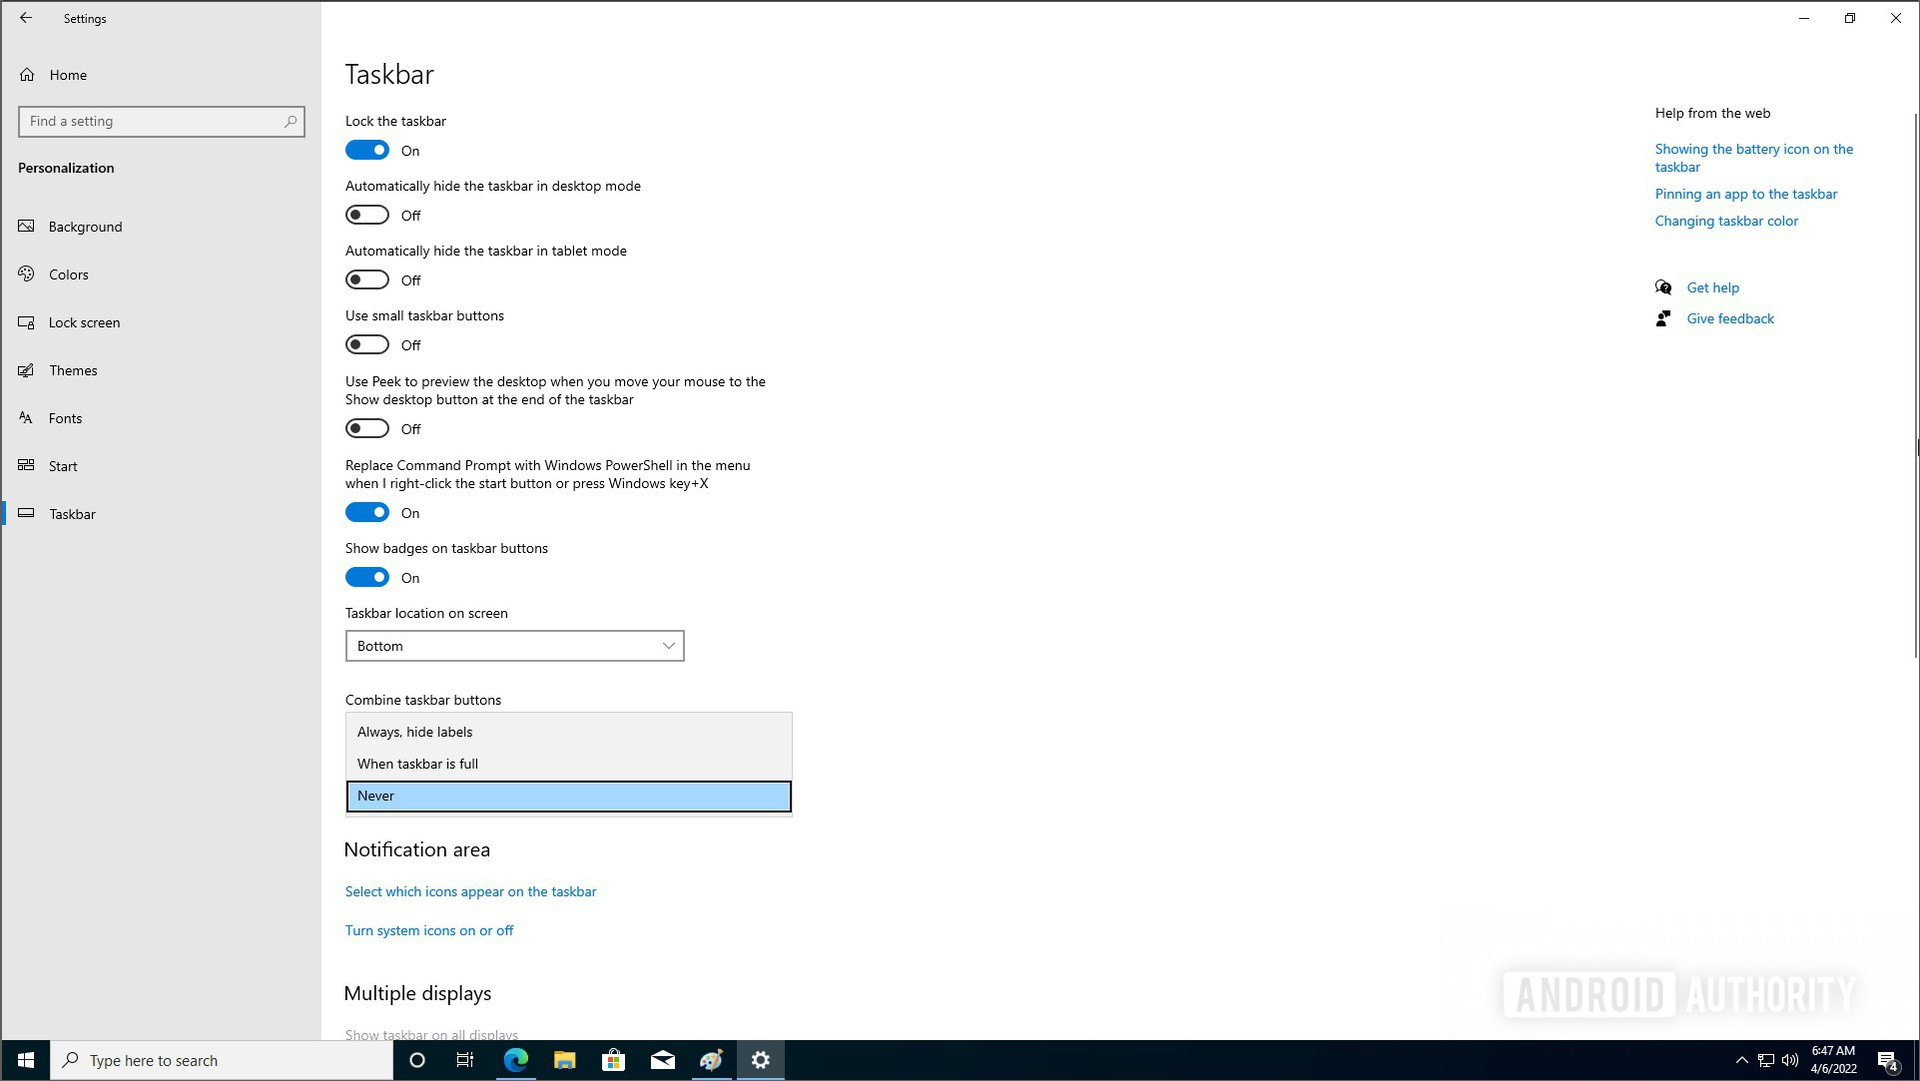 Windows 10 never combine taskbar buttons